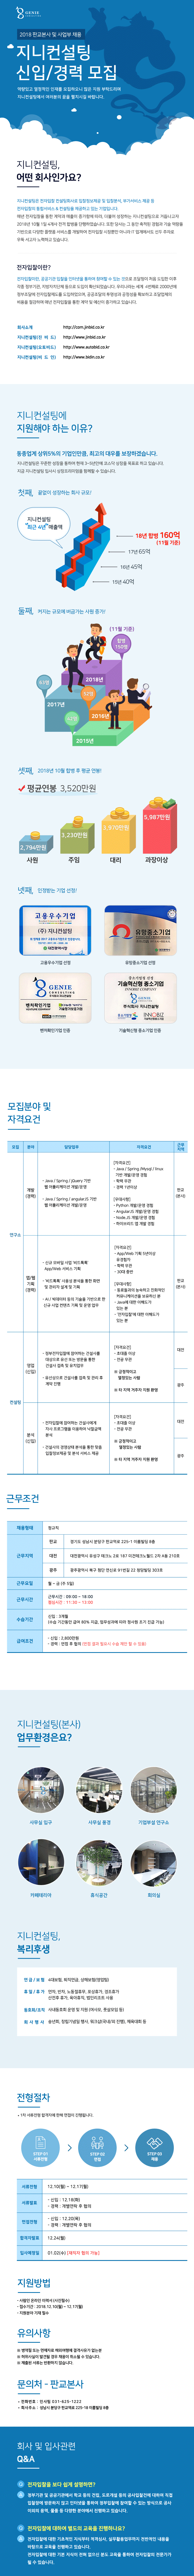 ㈜지니컨설팅 판교, 대전, 광주 신입/경력사원 채용